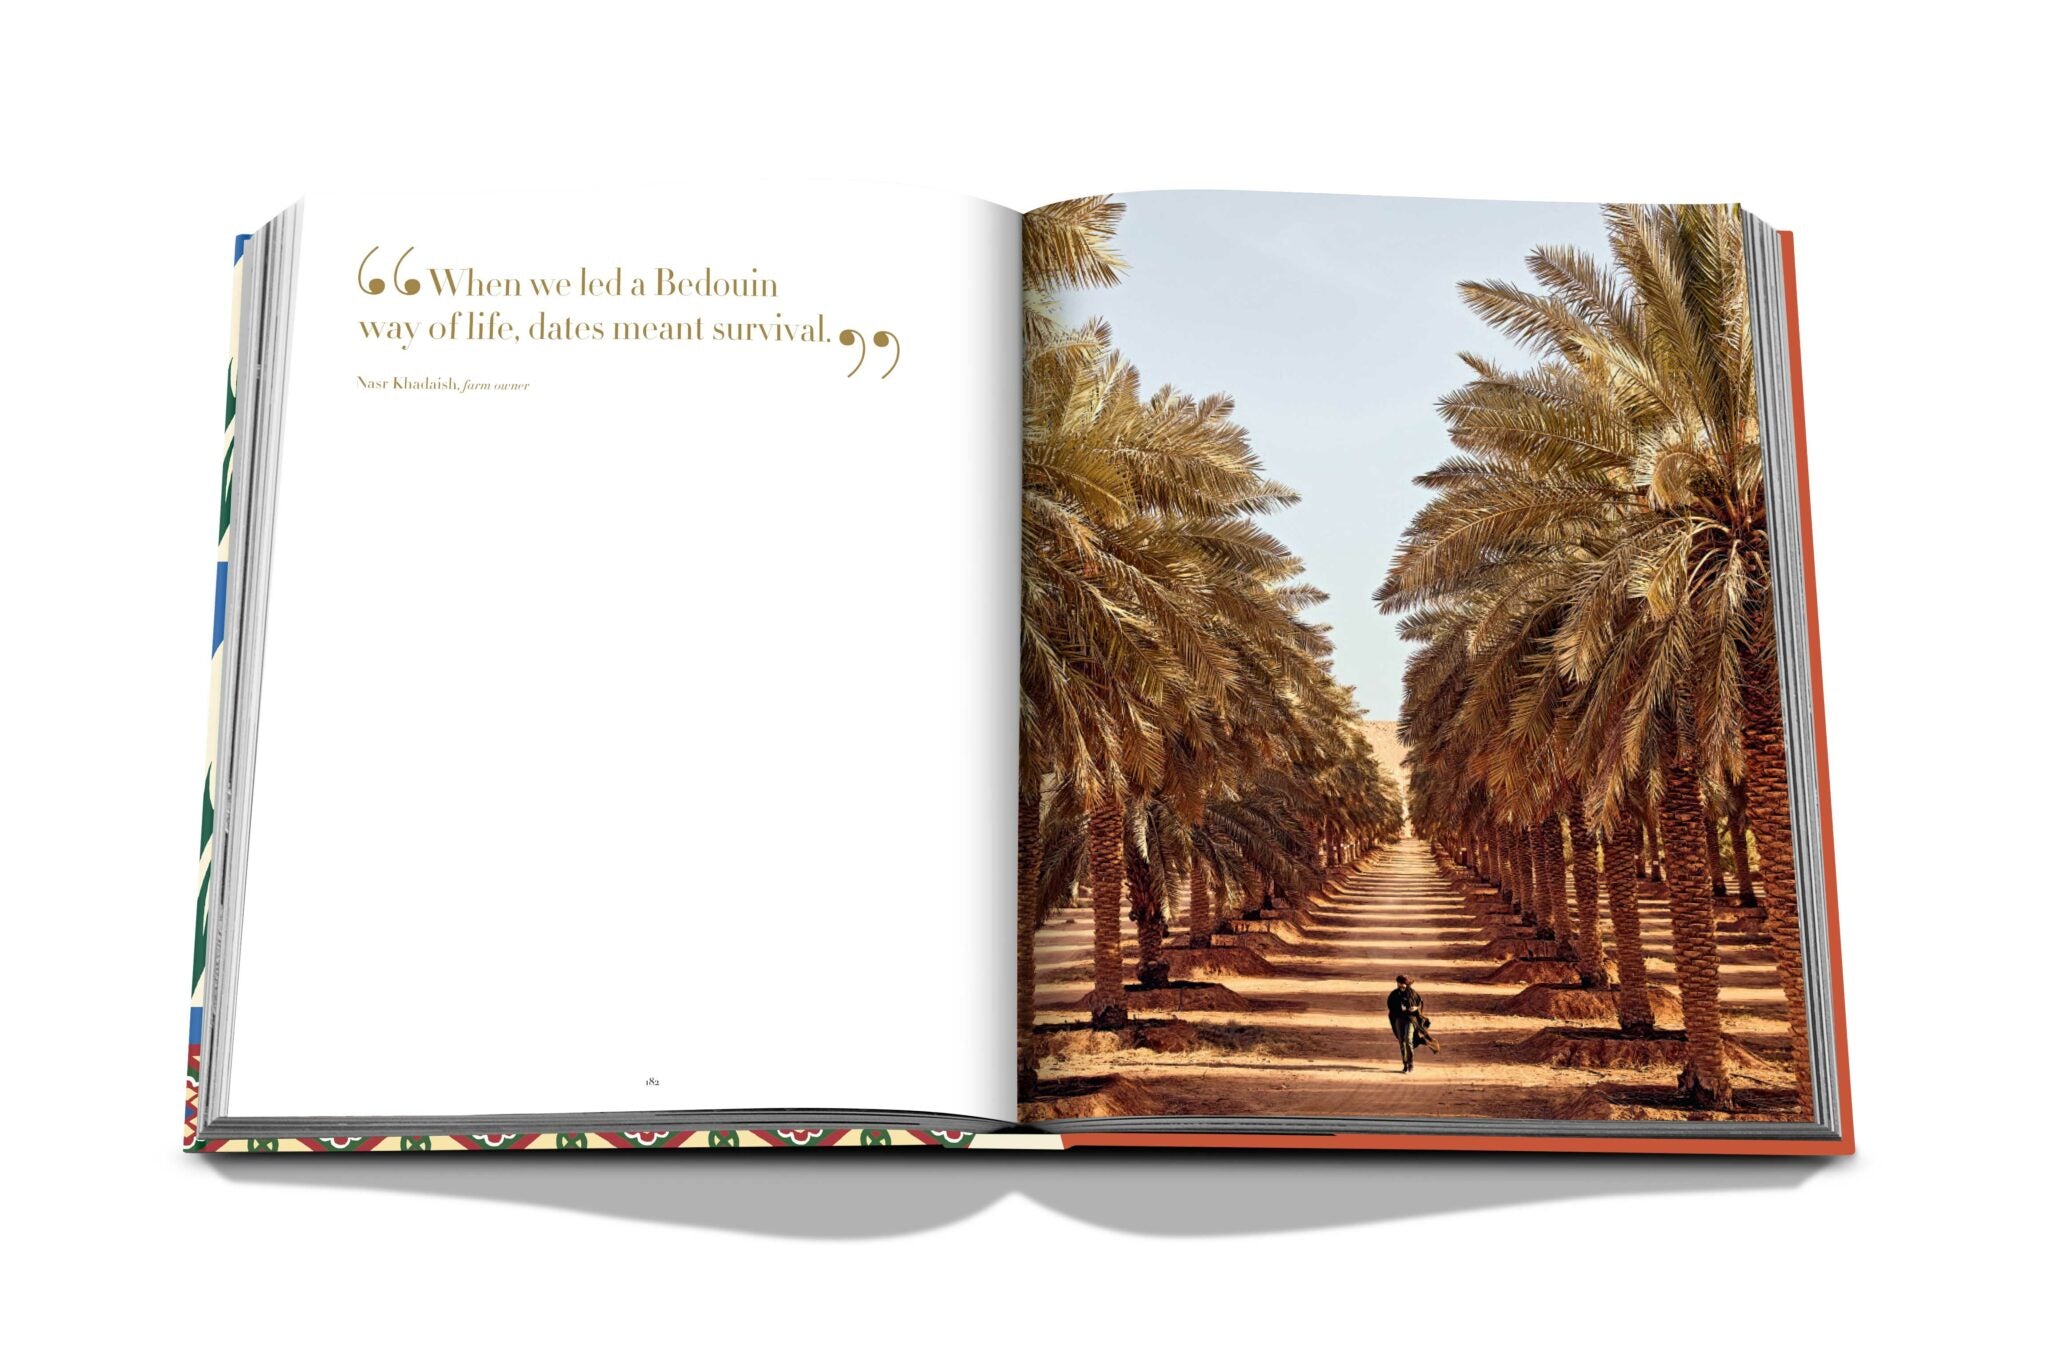 Assouline saudiska datum: Ett porträtt av den heliga frukten